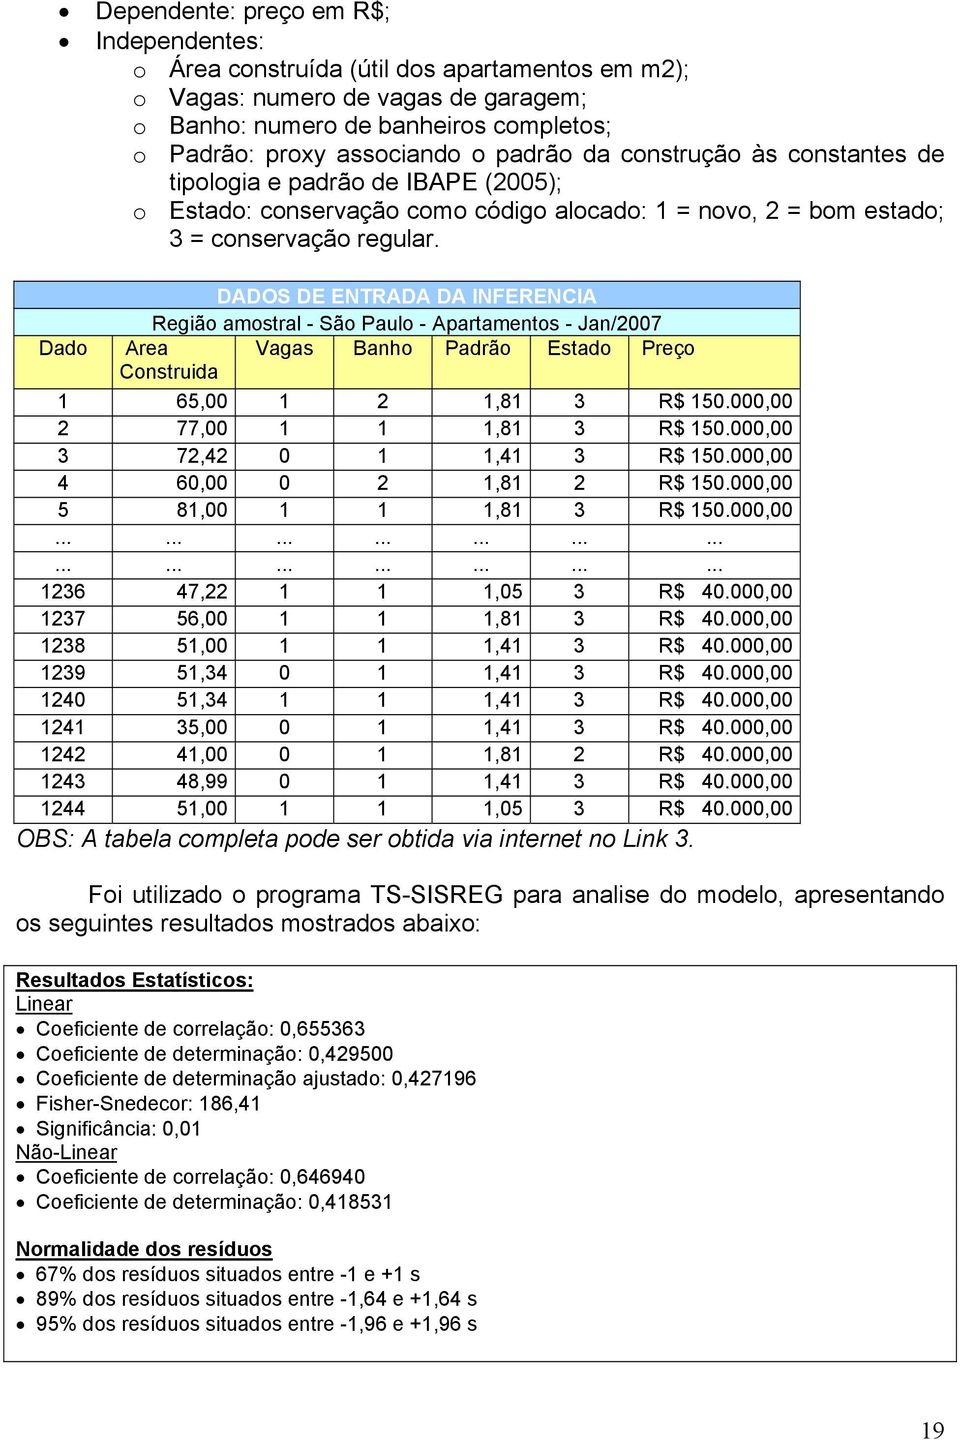 DADOS DE ENTRADA DA INFERENCIA Região amostral - São Paulo - Apartamentos - Jan/2007 Dado Area Vagas Banho Padrão Estado Preço Construida 1 65,00 1 2 1,81 3 R$ 150.000,00 2 77,00 1 1 1,81 3 R$ 150.